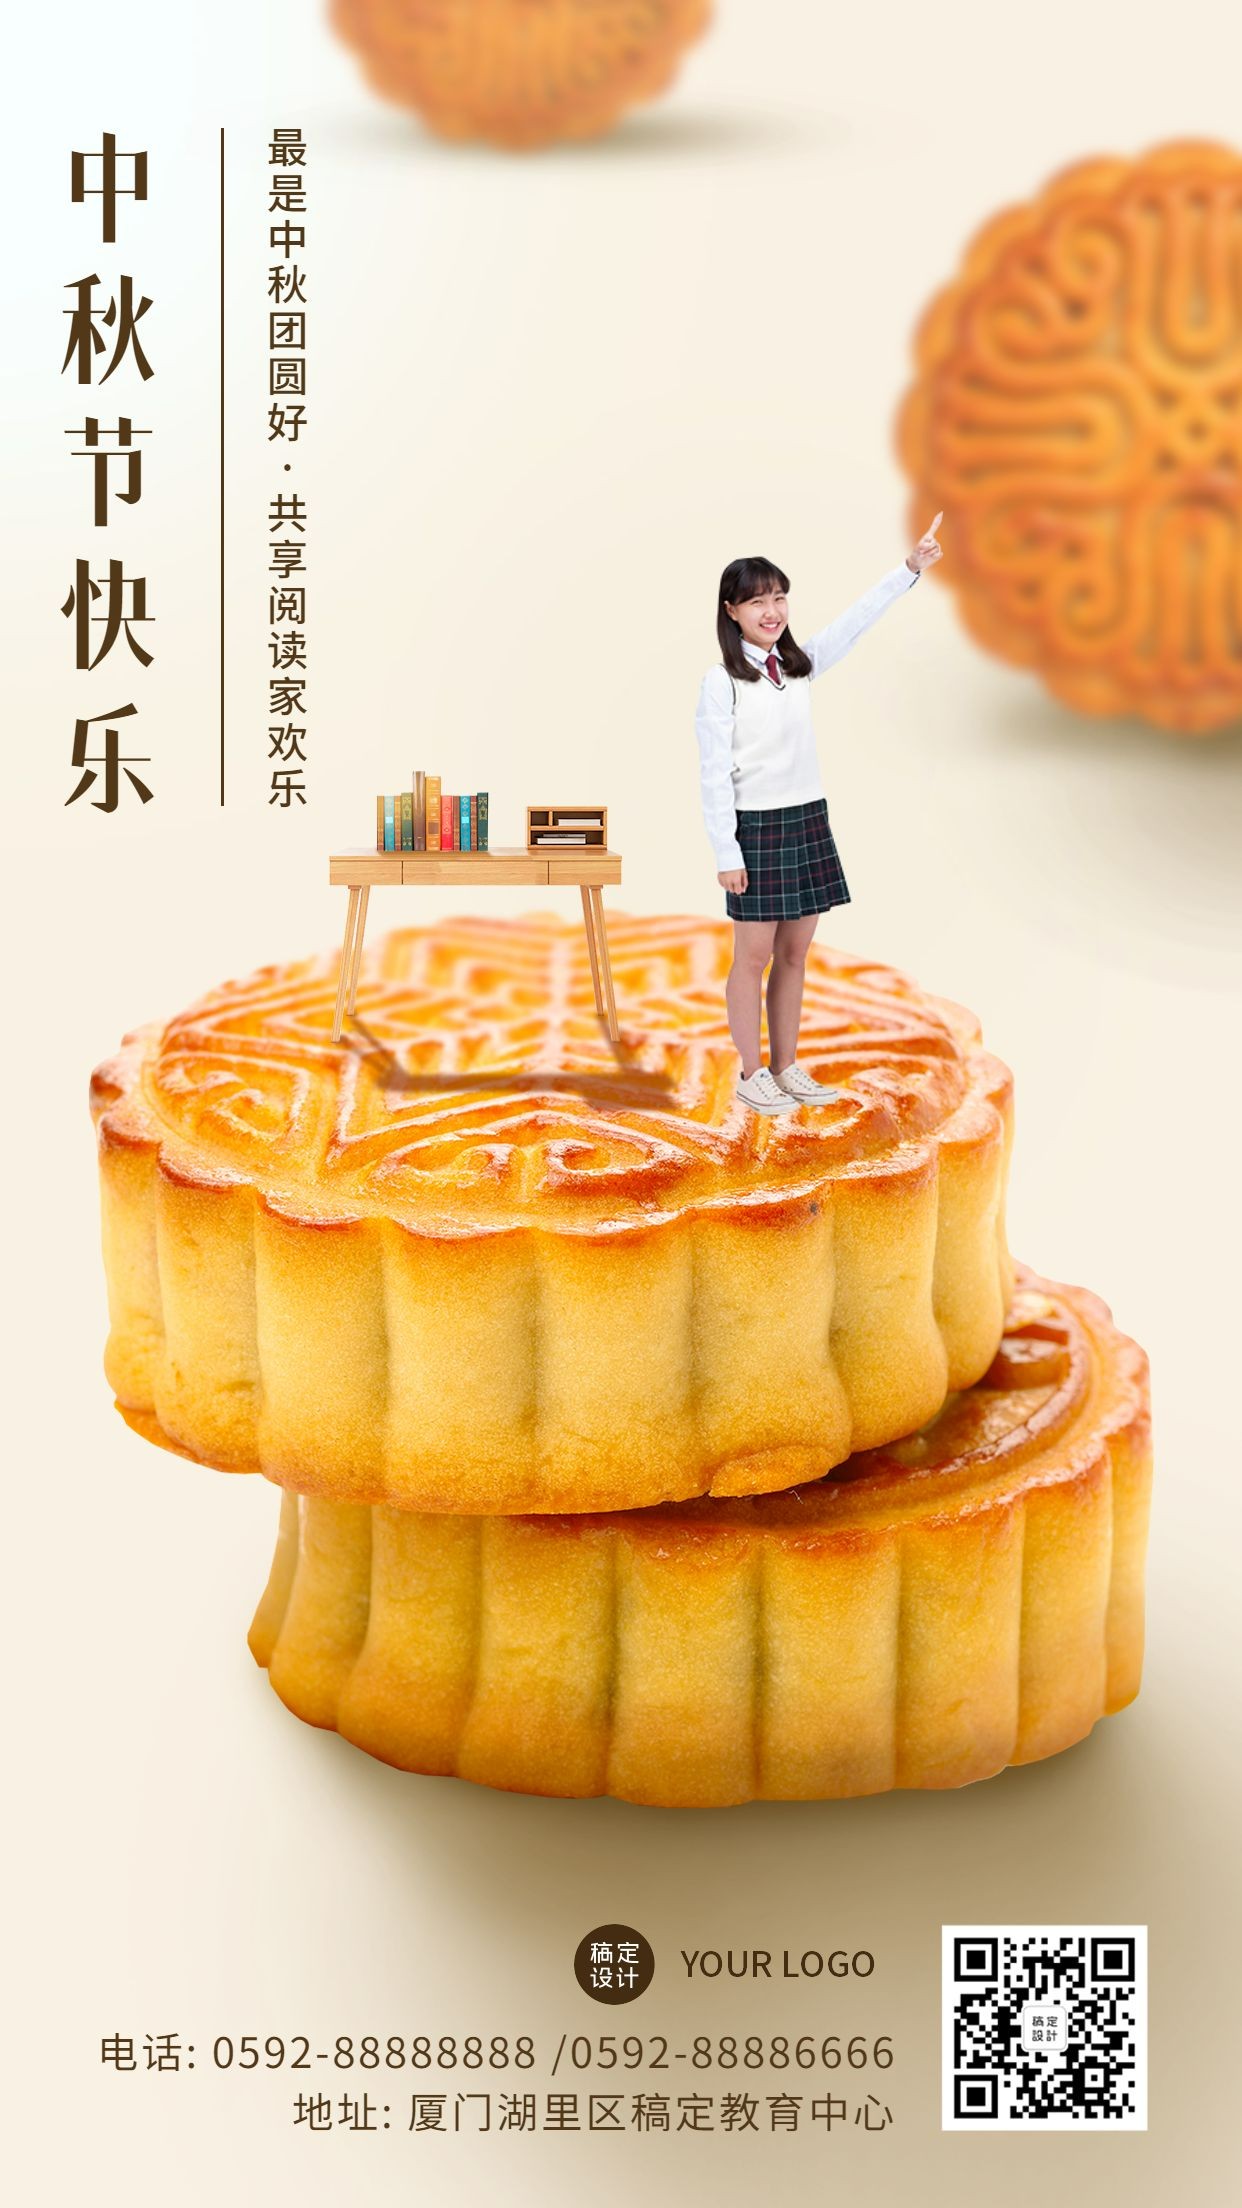 中秋节教育学习月饼实景祝福海报